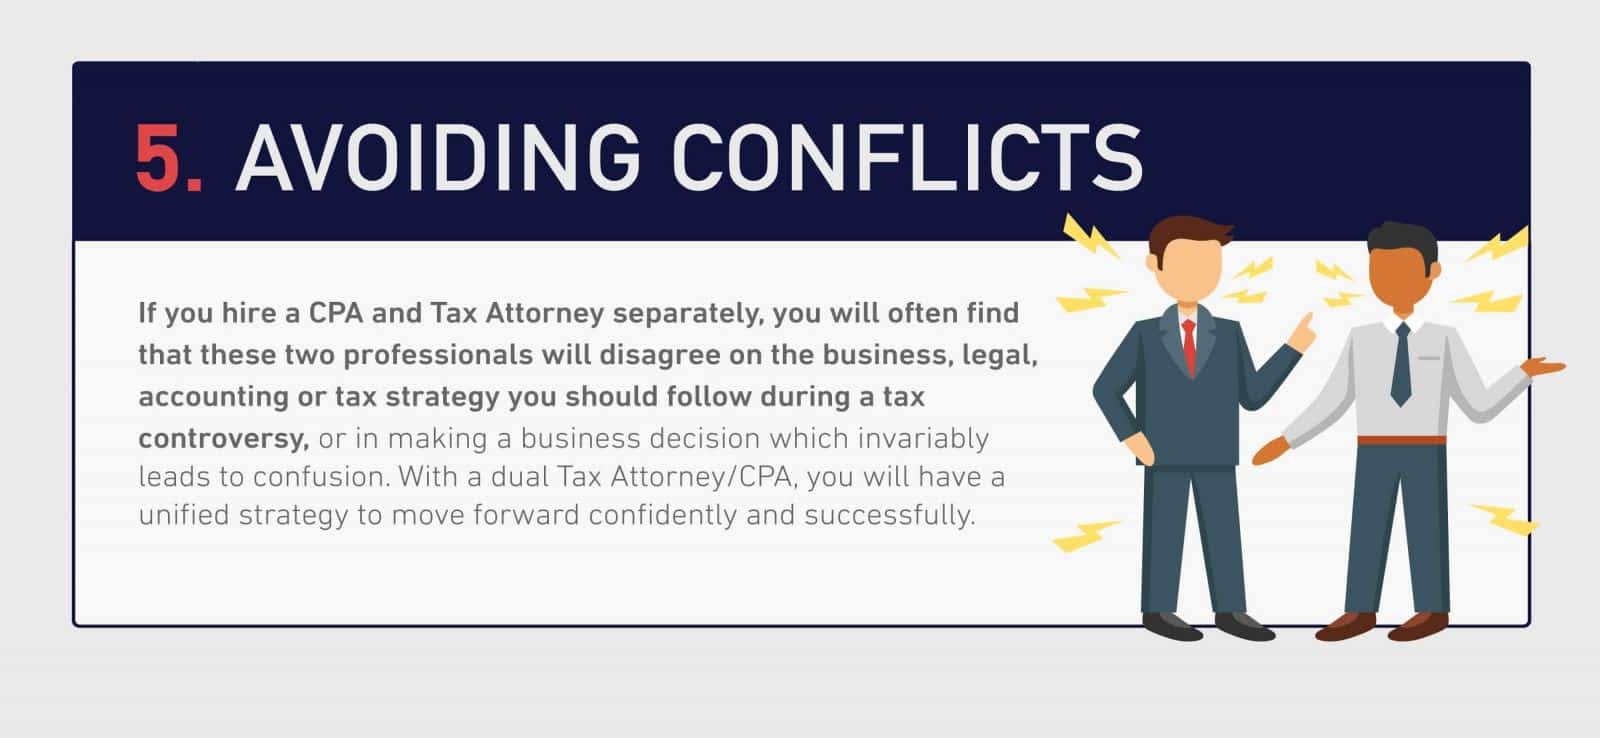 Avoiding-conflicts-klasing-associates-oxnard-tax-attorney